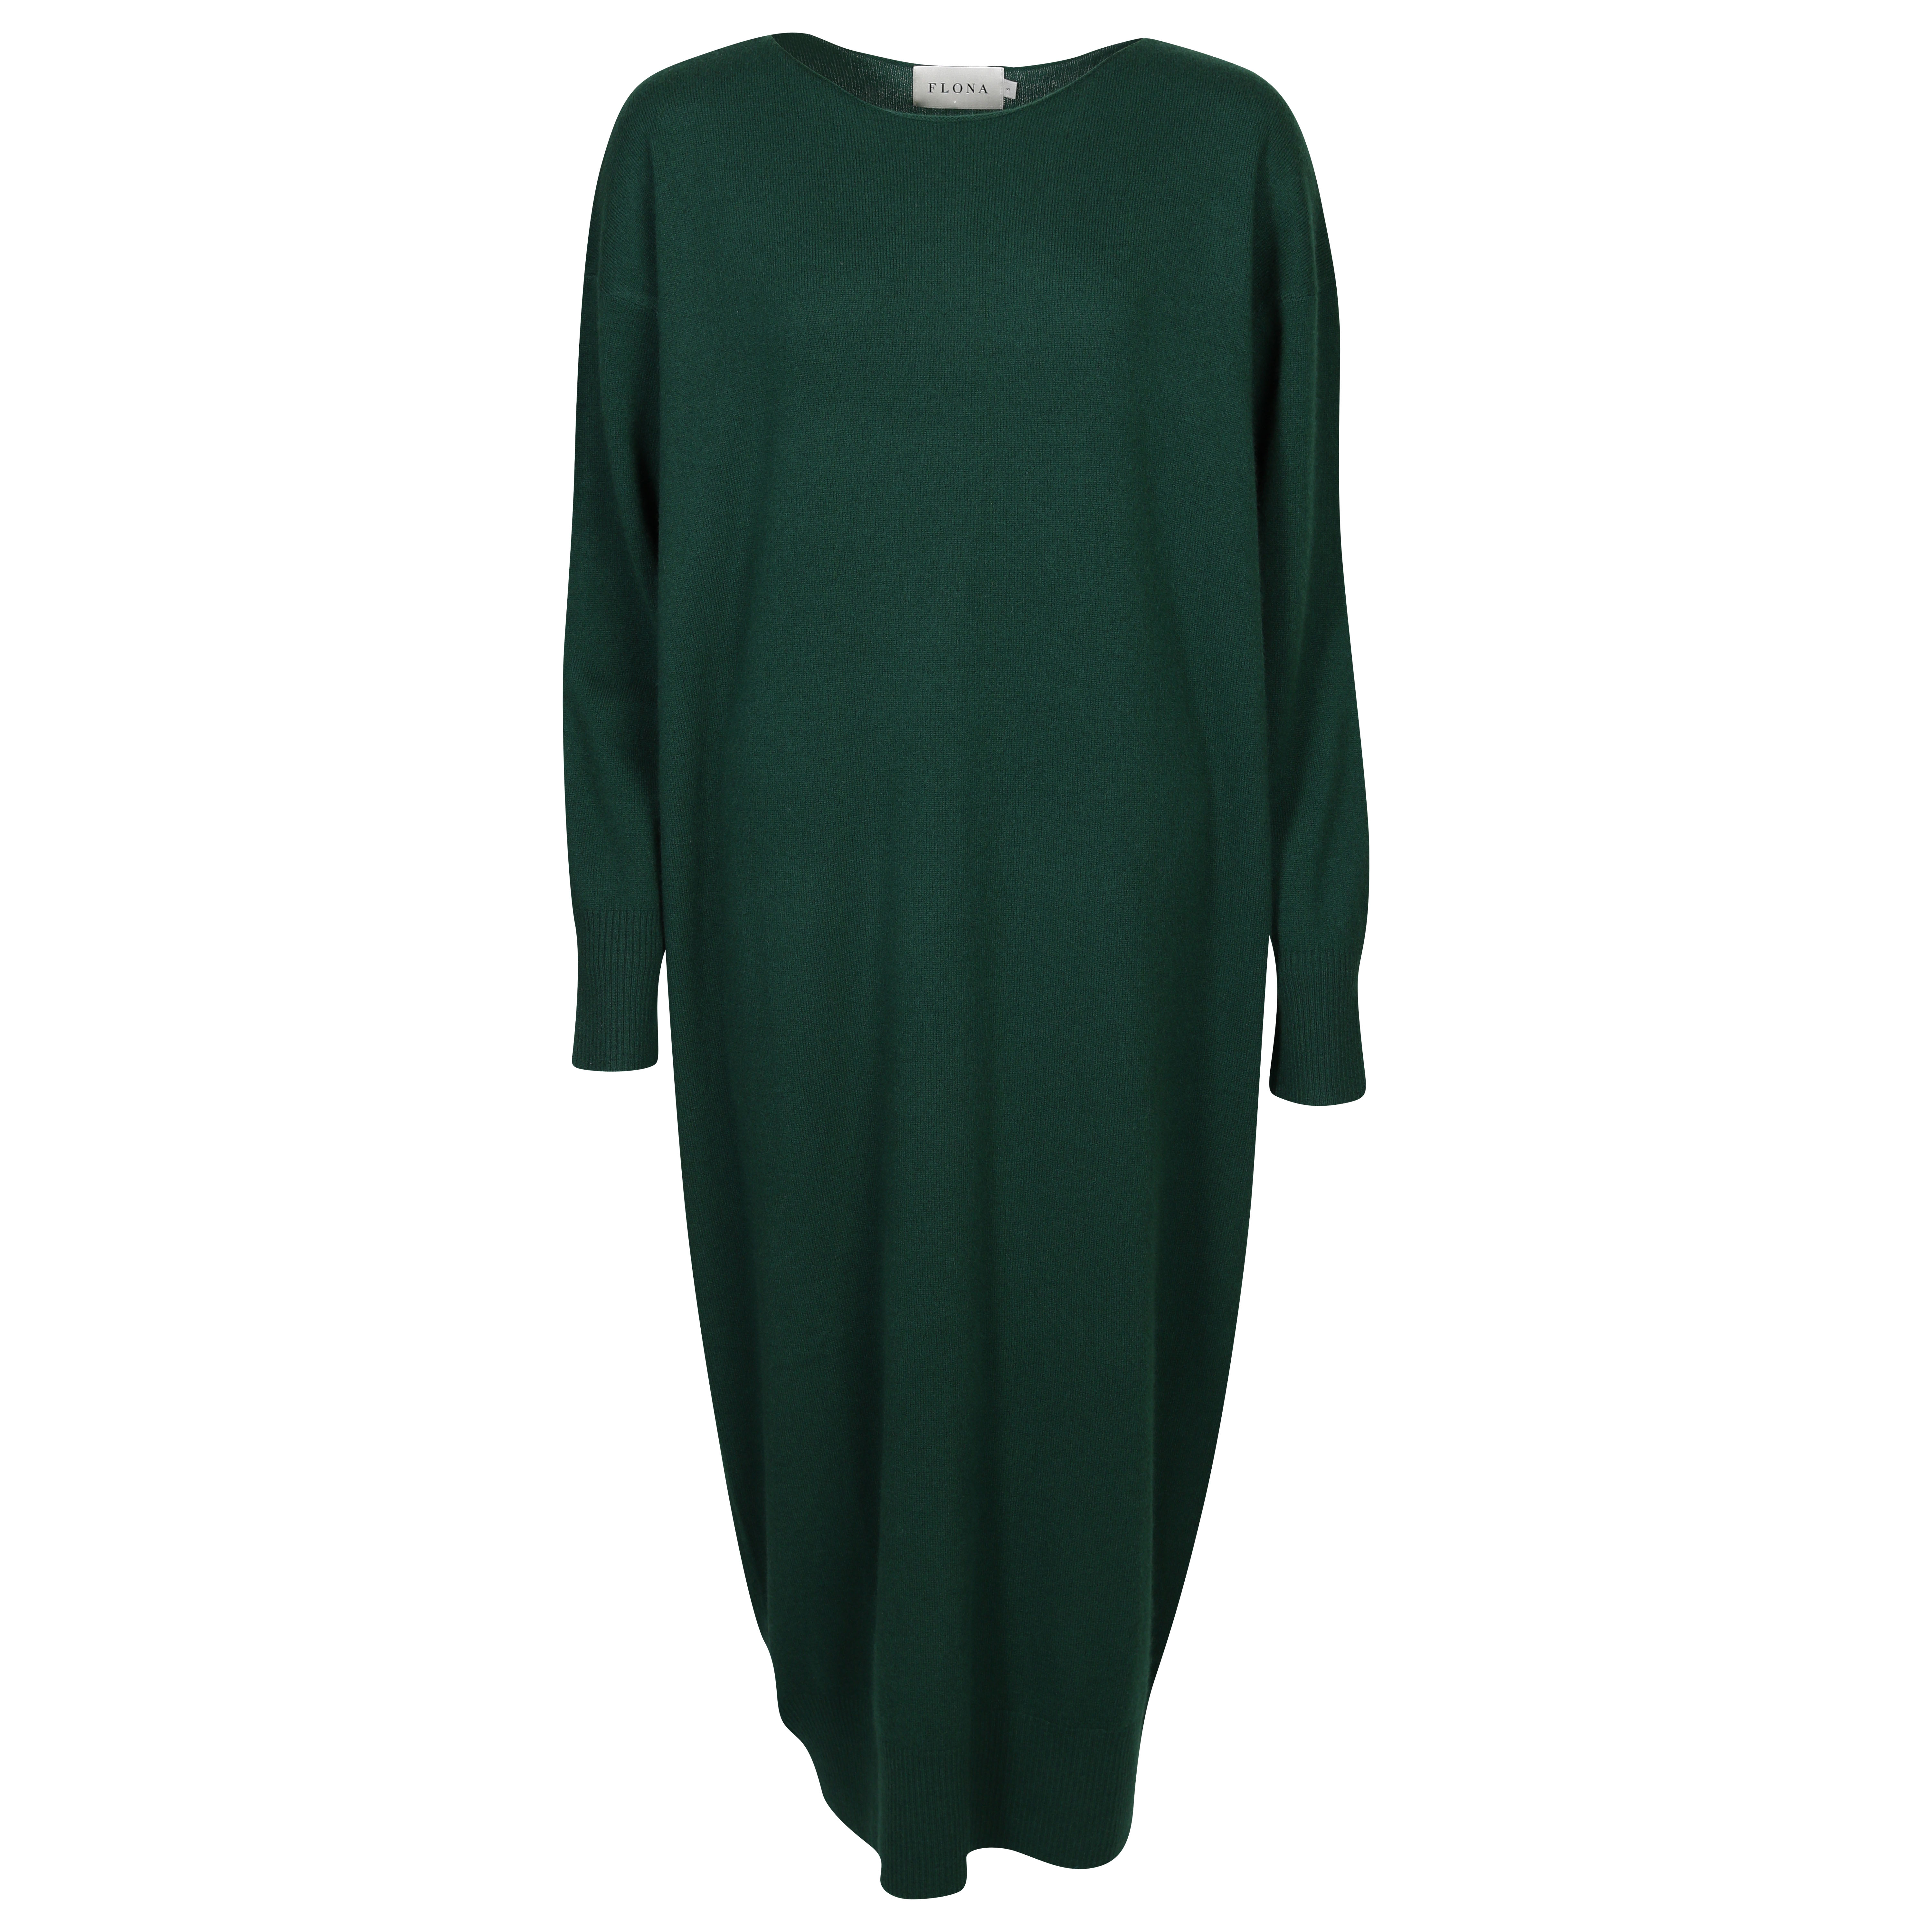 Flona Cashmere Dress in Dark Green